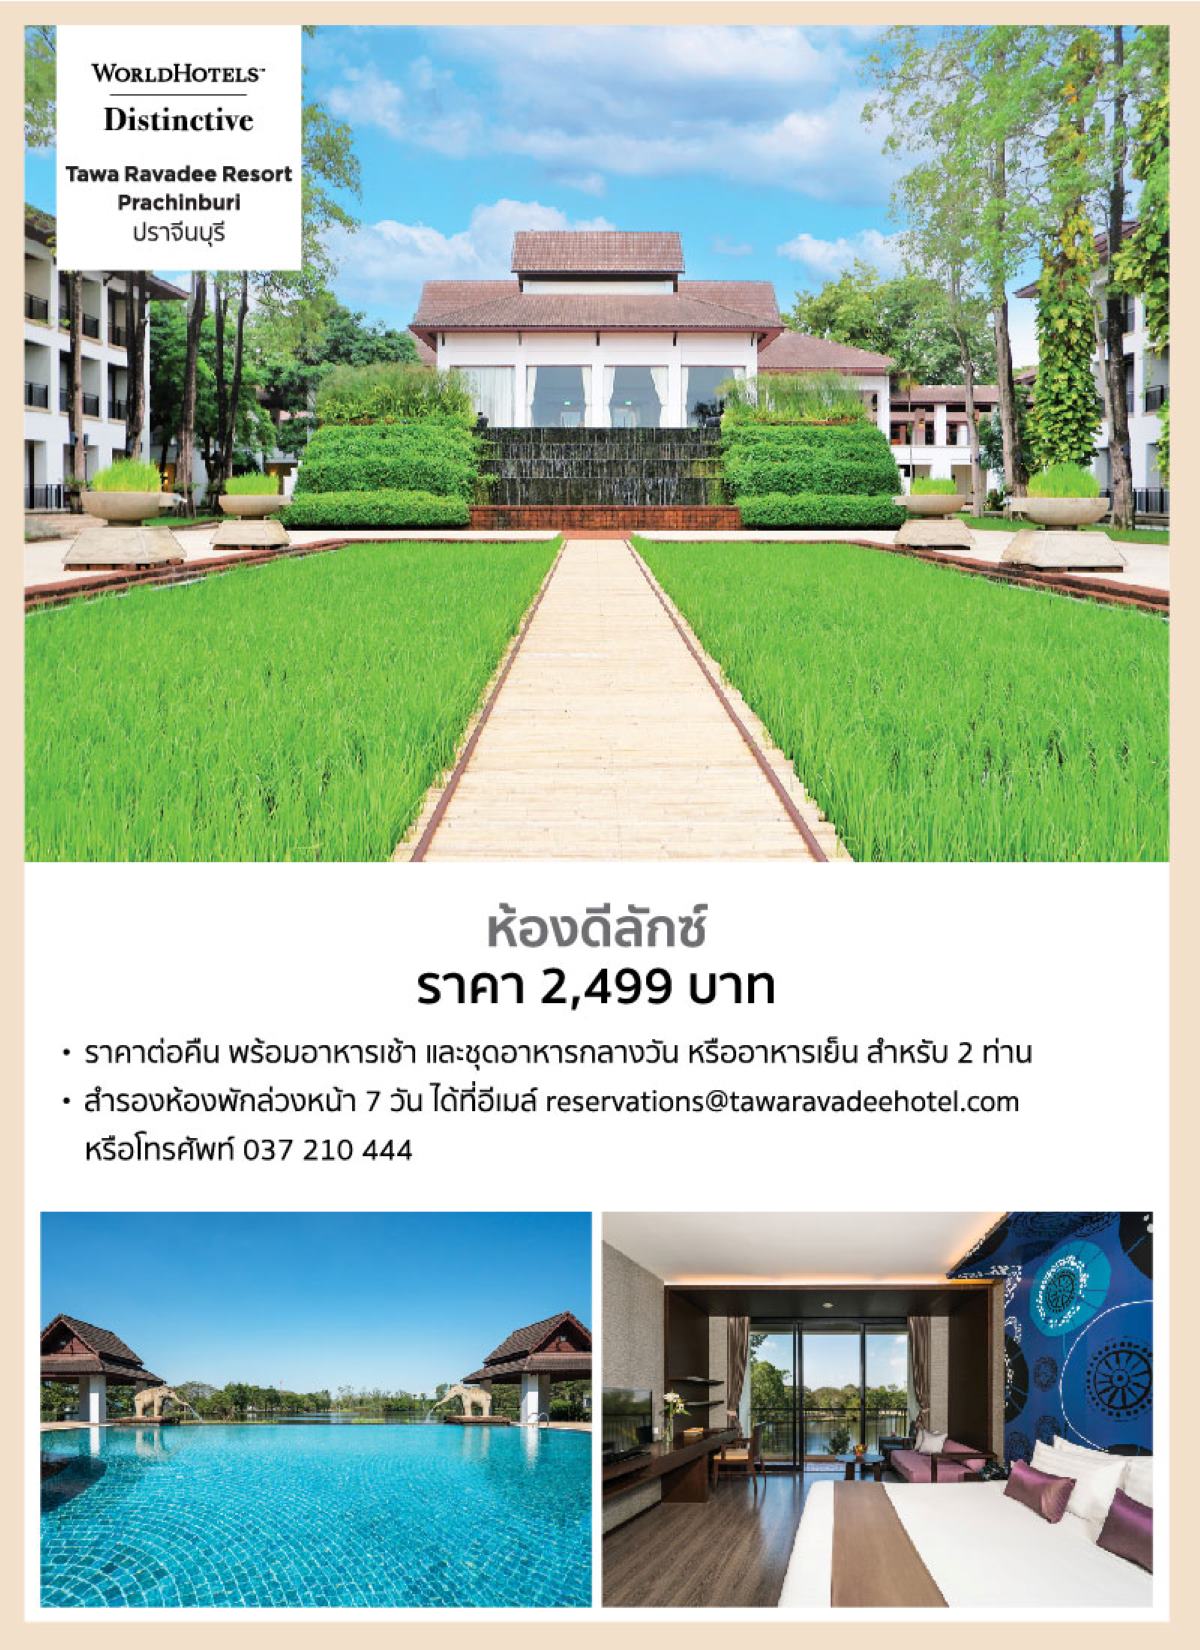 18.Tawa Ravadee Resort Prachinburi